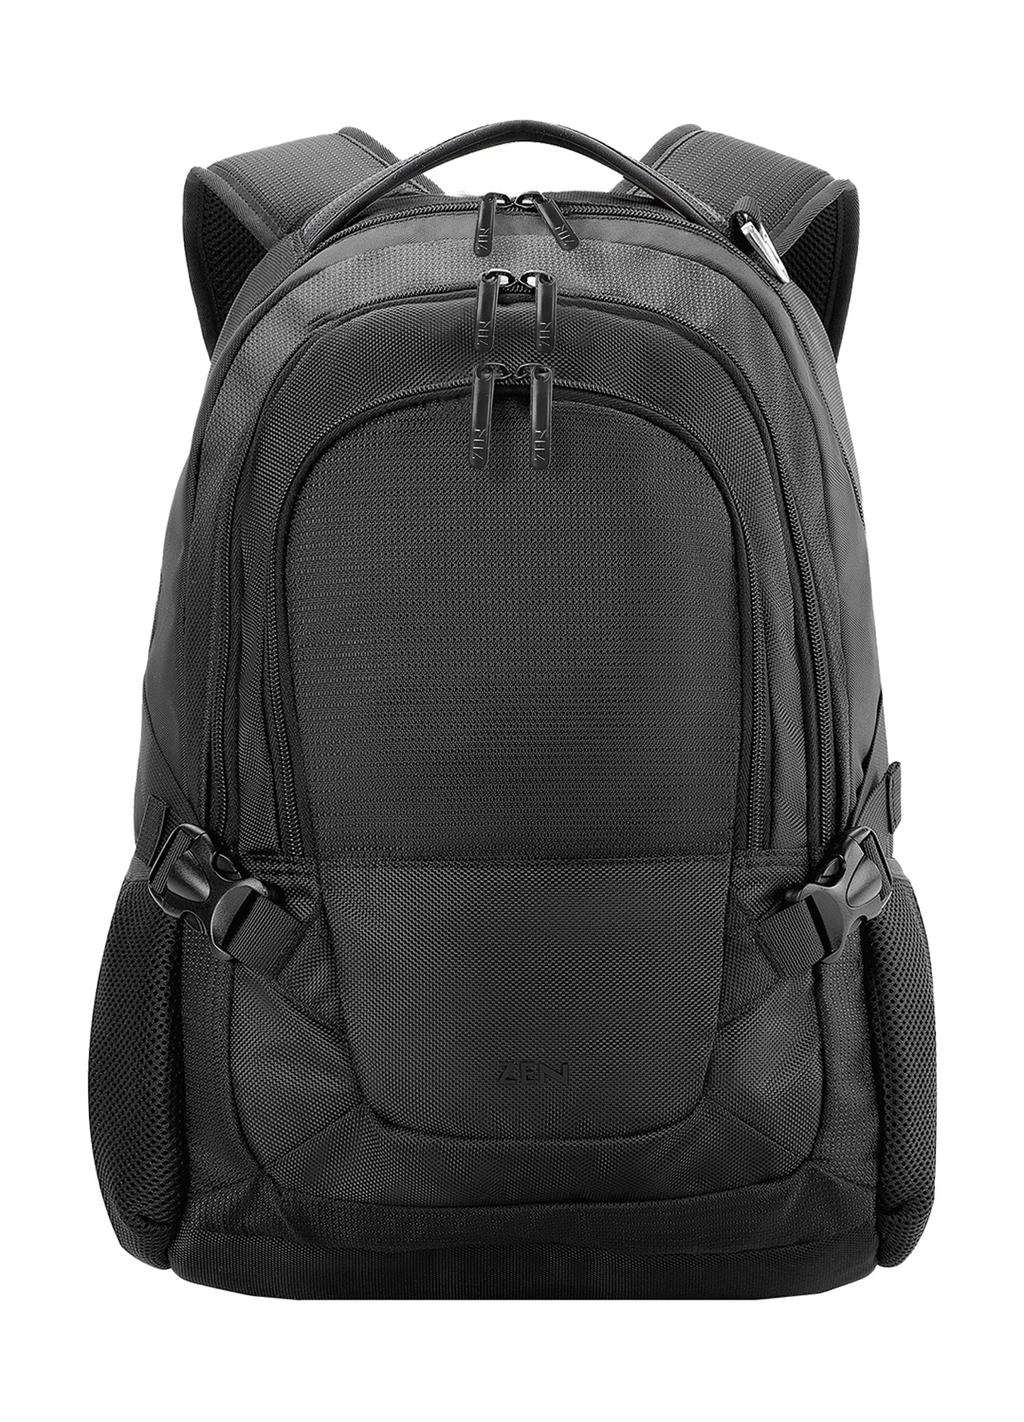 Lausanne Outdoor Laptop Backpack zum Besticken und Bedrucken in der Farbe Black mit Ihren Logo, Schriftzug oder Motiv.